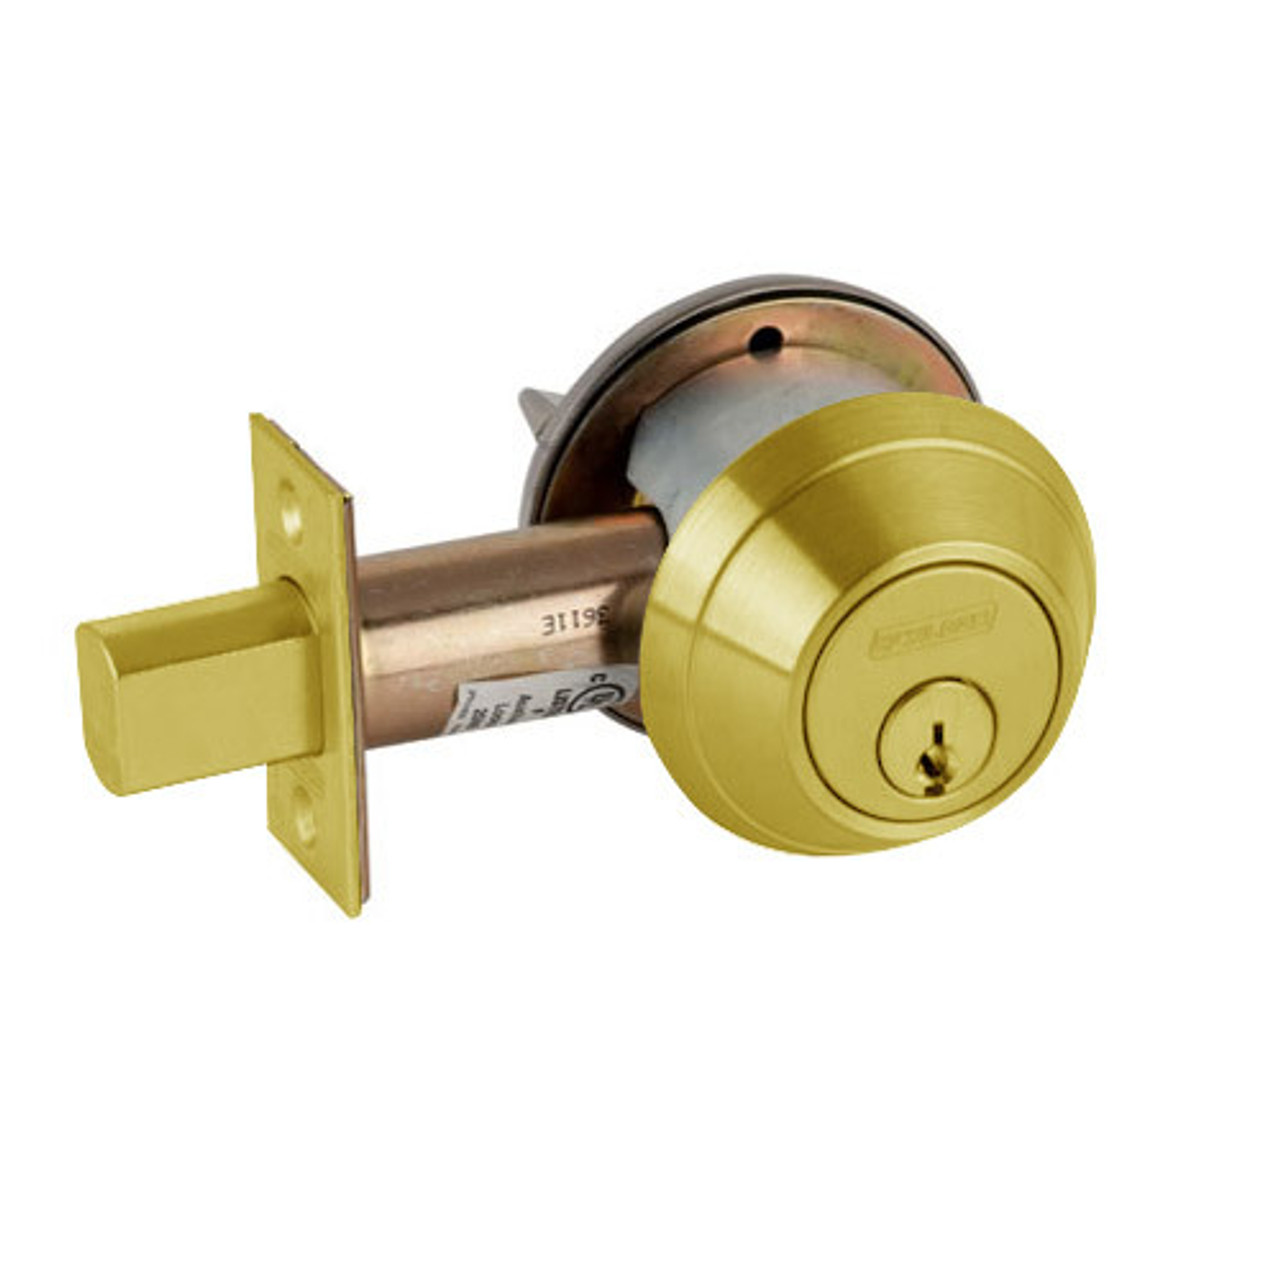 B662P-605 Schlage B660 Bored Deadbolt Locks in Bright Brass